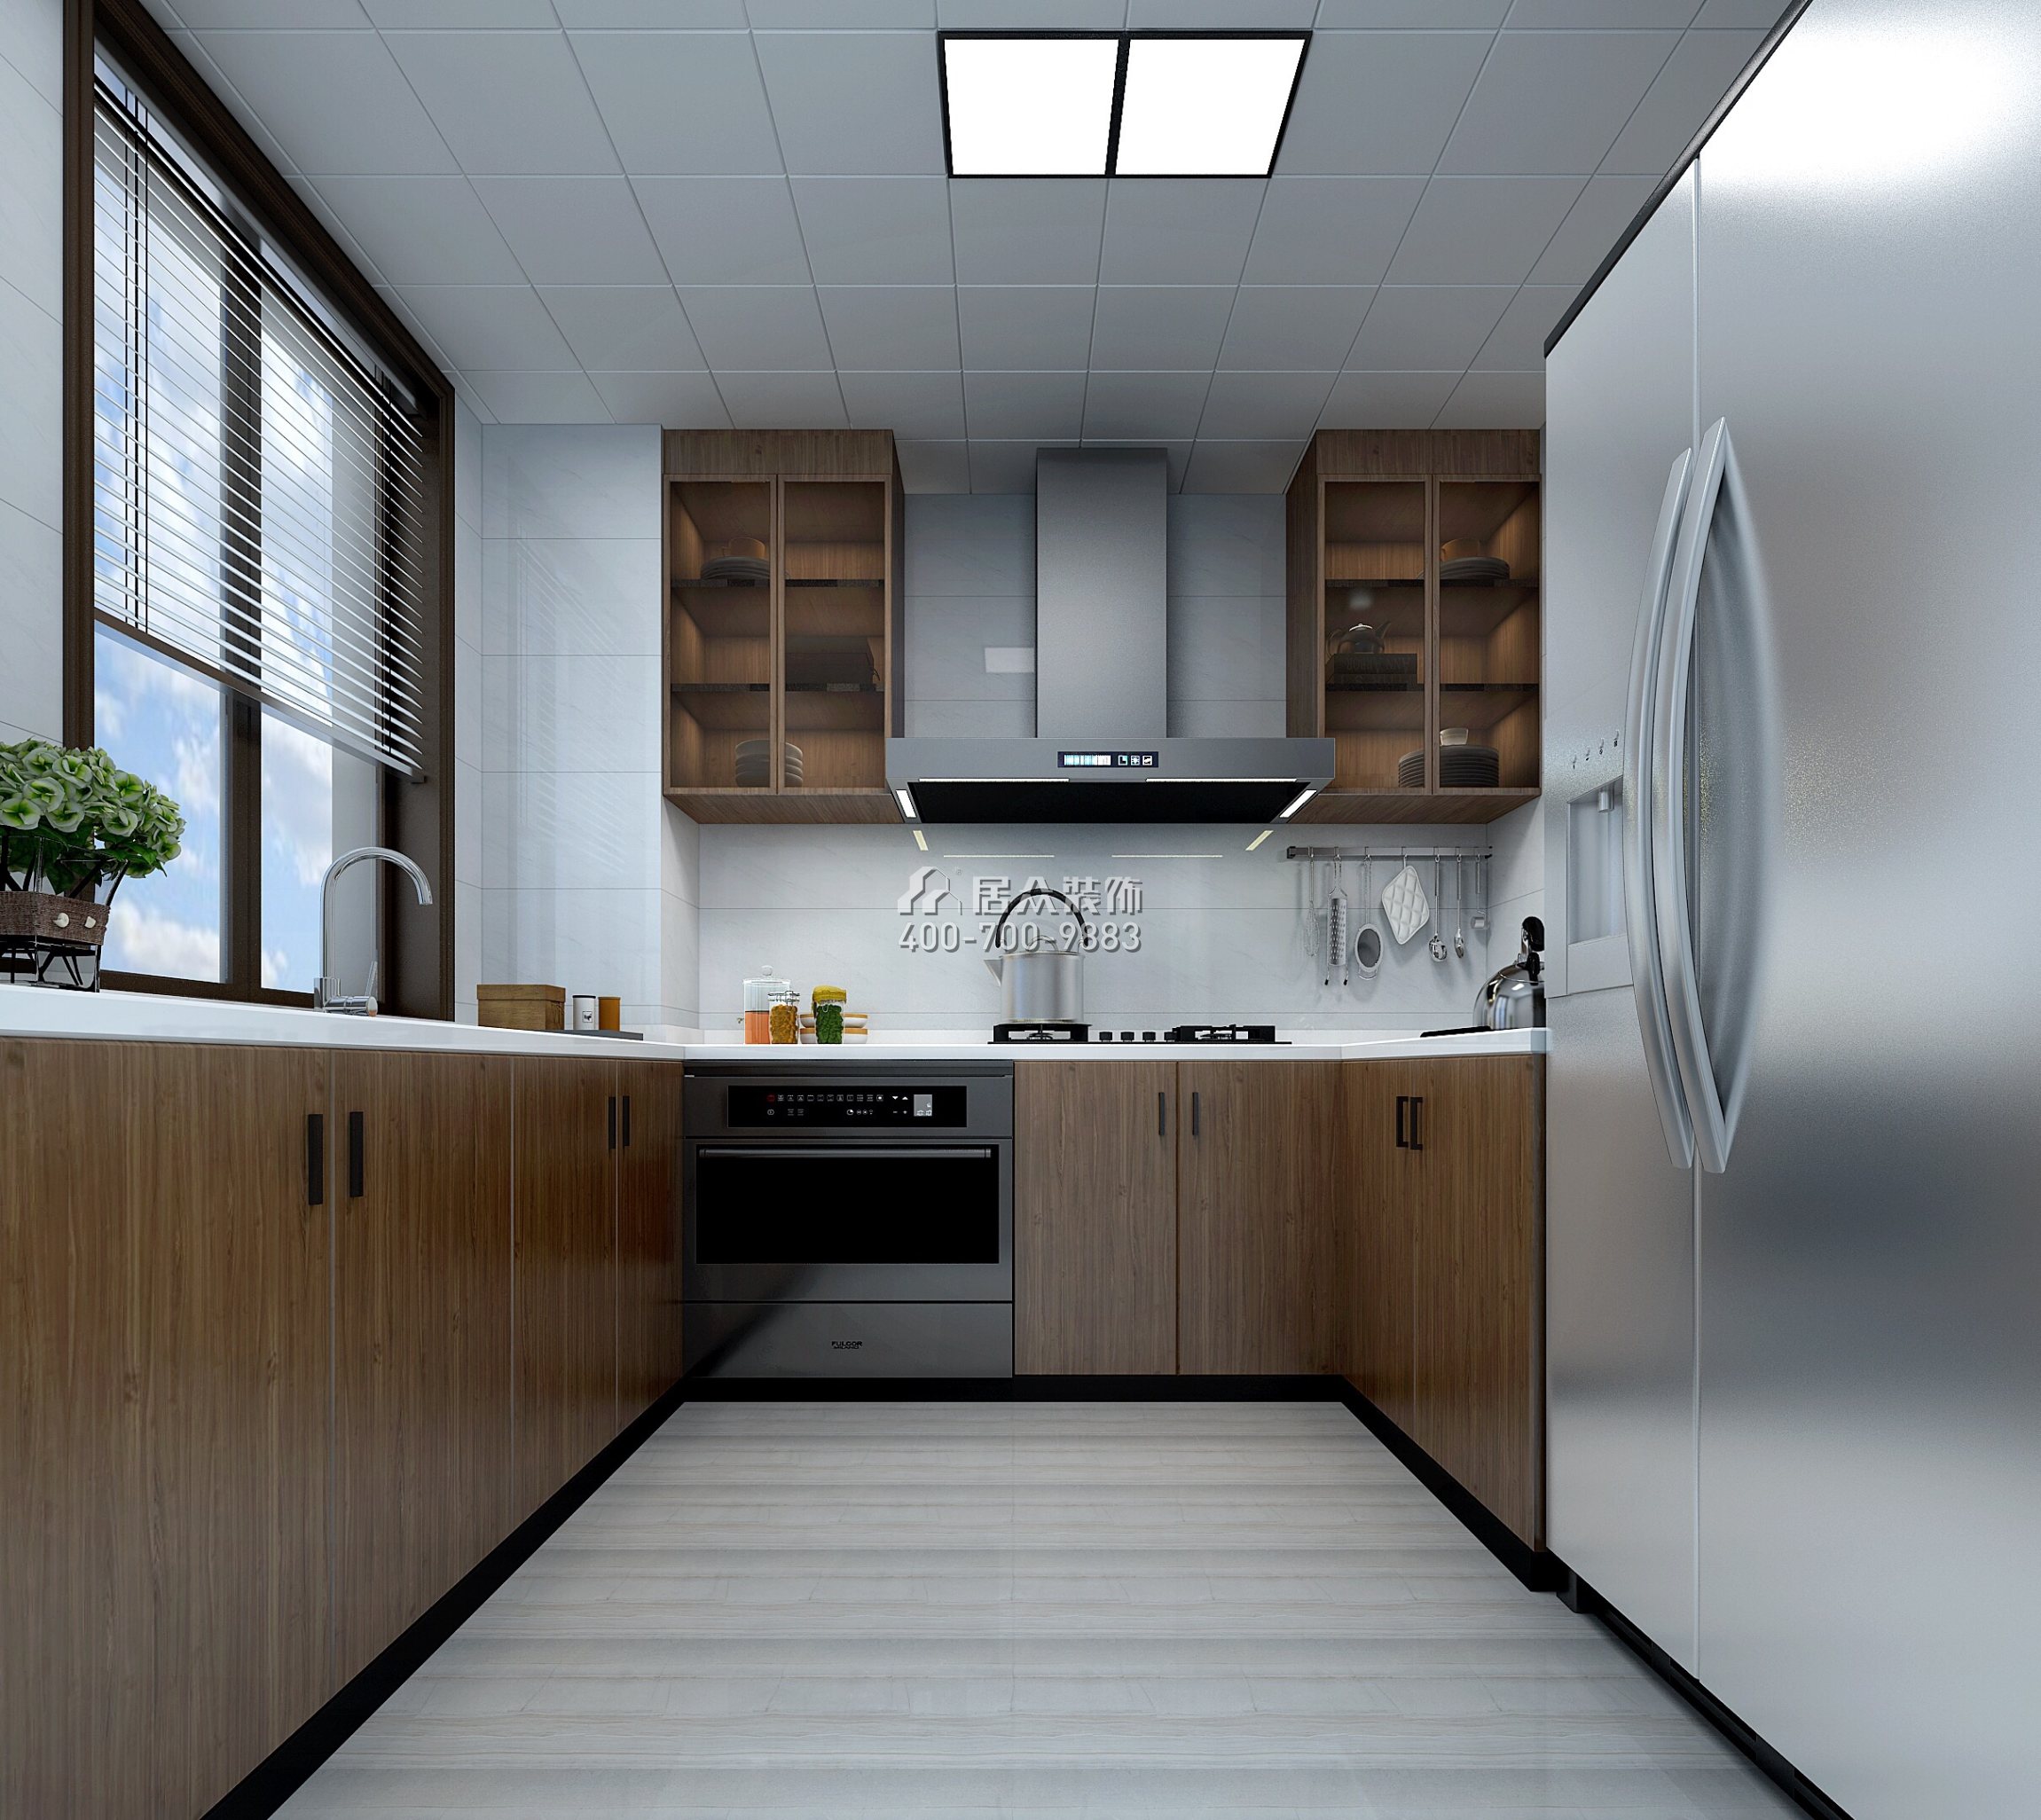 隆生東湖九區155平方米現代簡約風格平層戶型廚房裝修效果圖